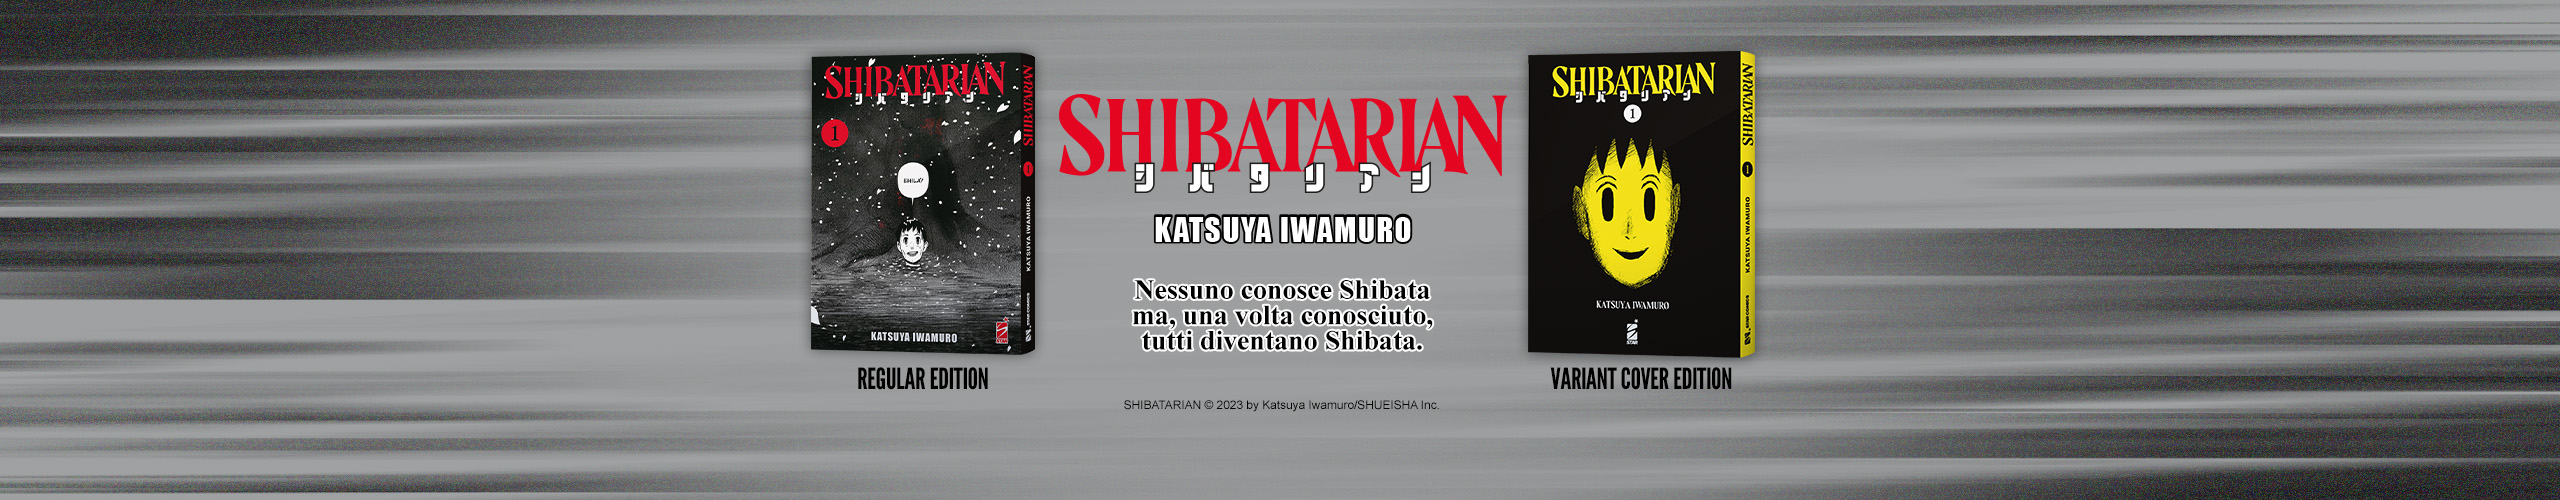 Shibatarian-Newshome.jpg